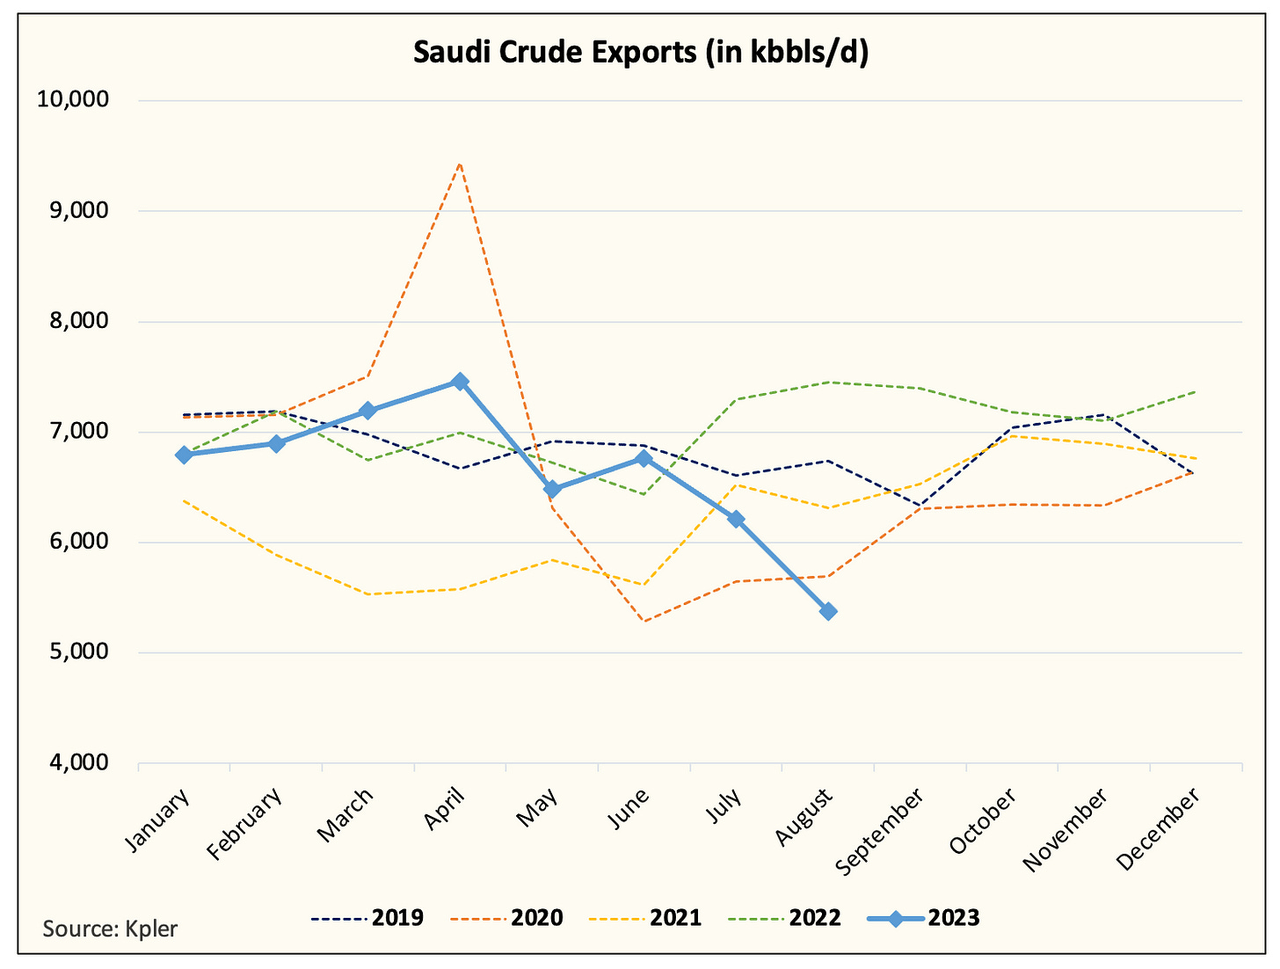 Saudi crude exports